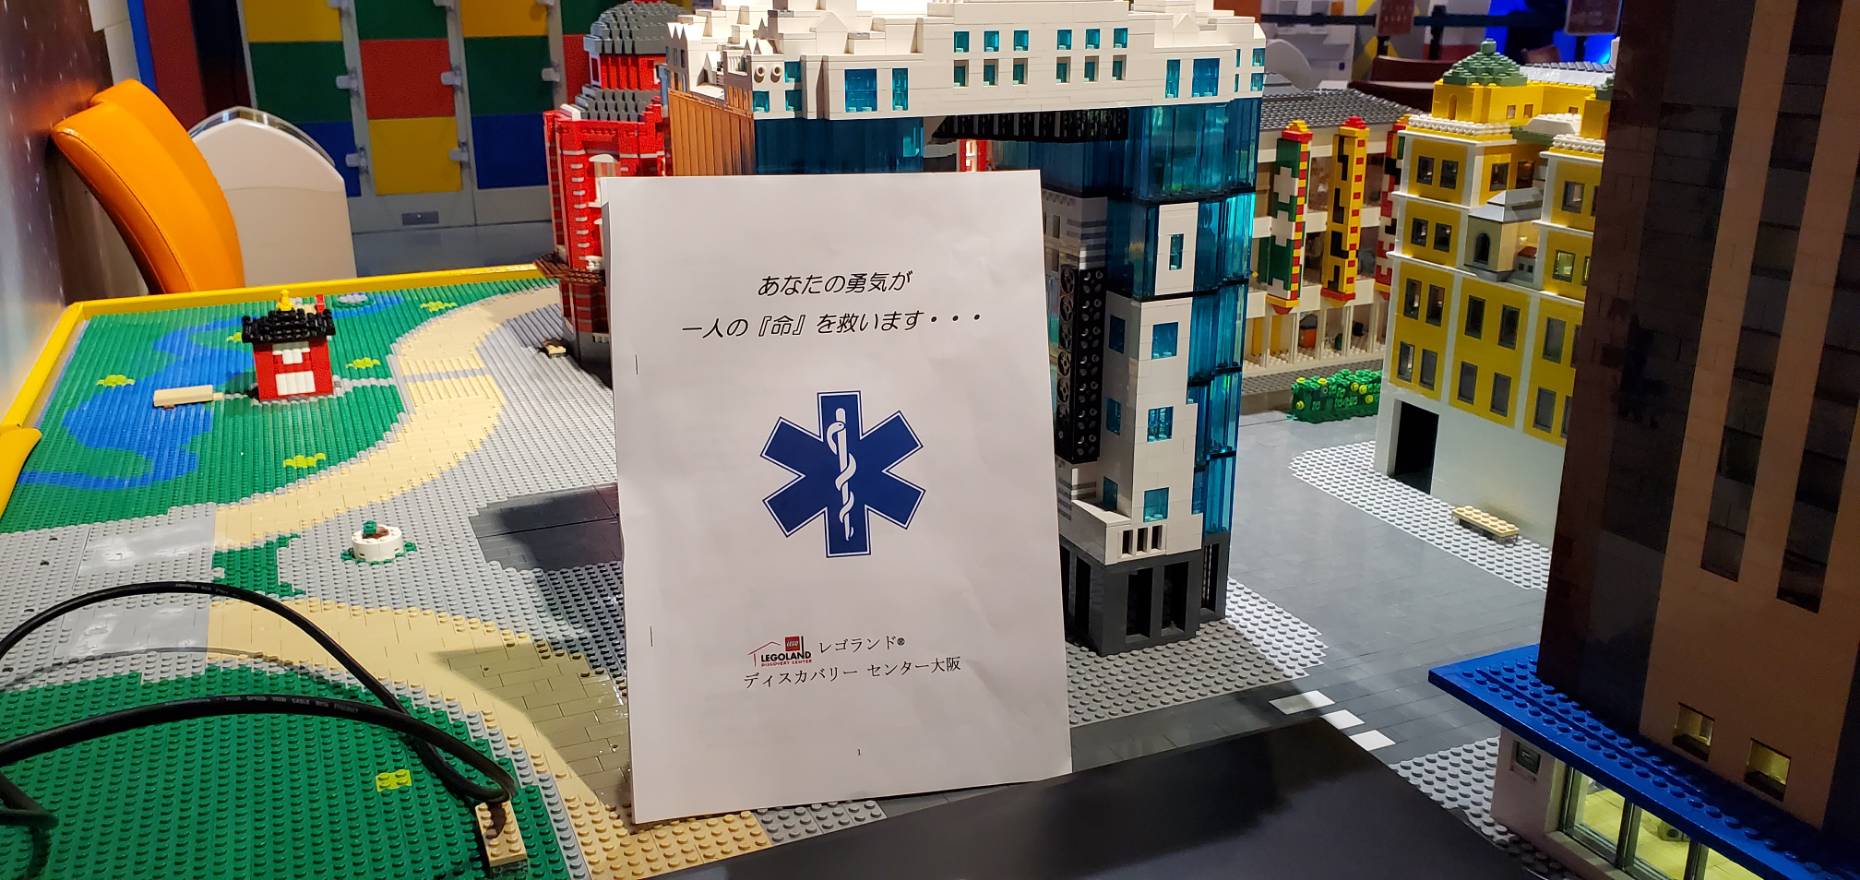 レゴランド 大阪で救急救命講習を行いました ぼー先生の救急救命は俺に任せろ